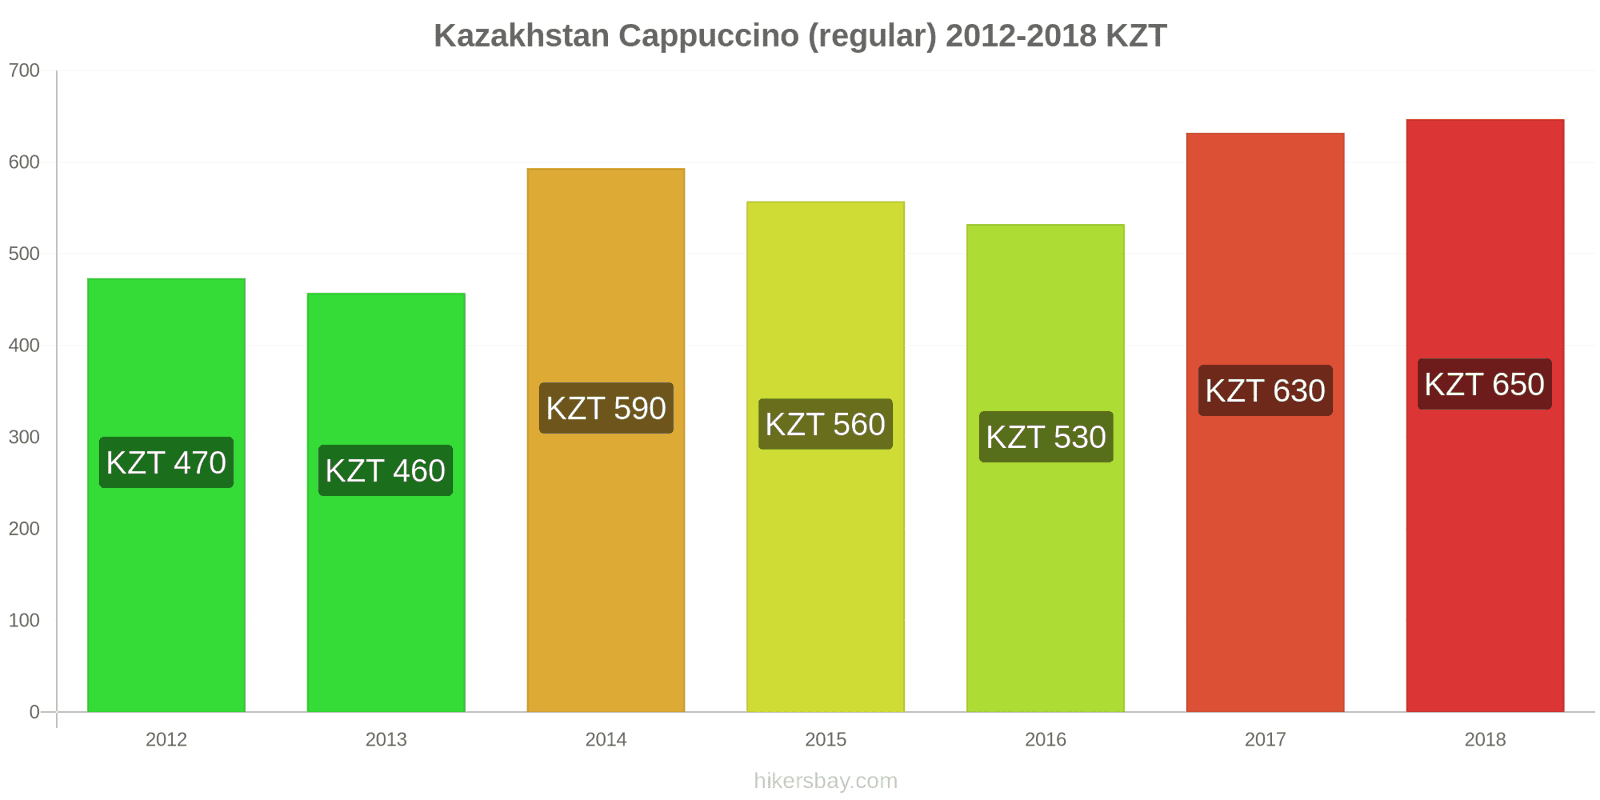 Kazakhstan price changes Cappuccino hikersbay.com